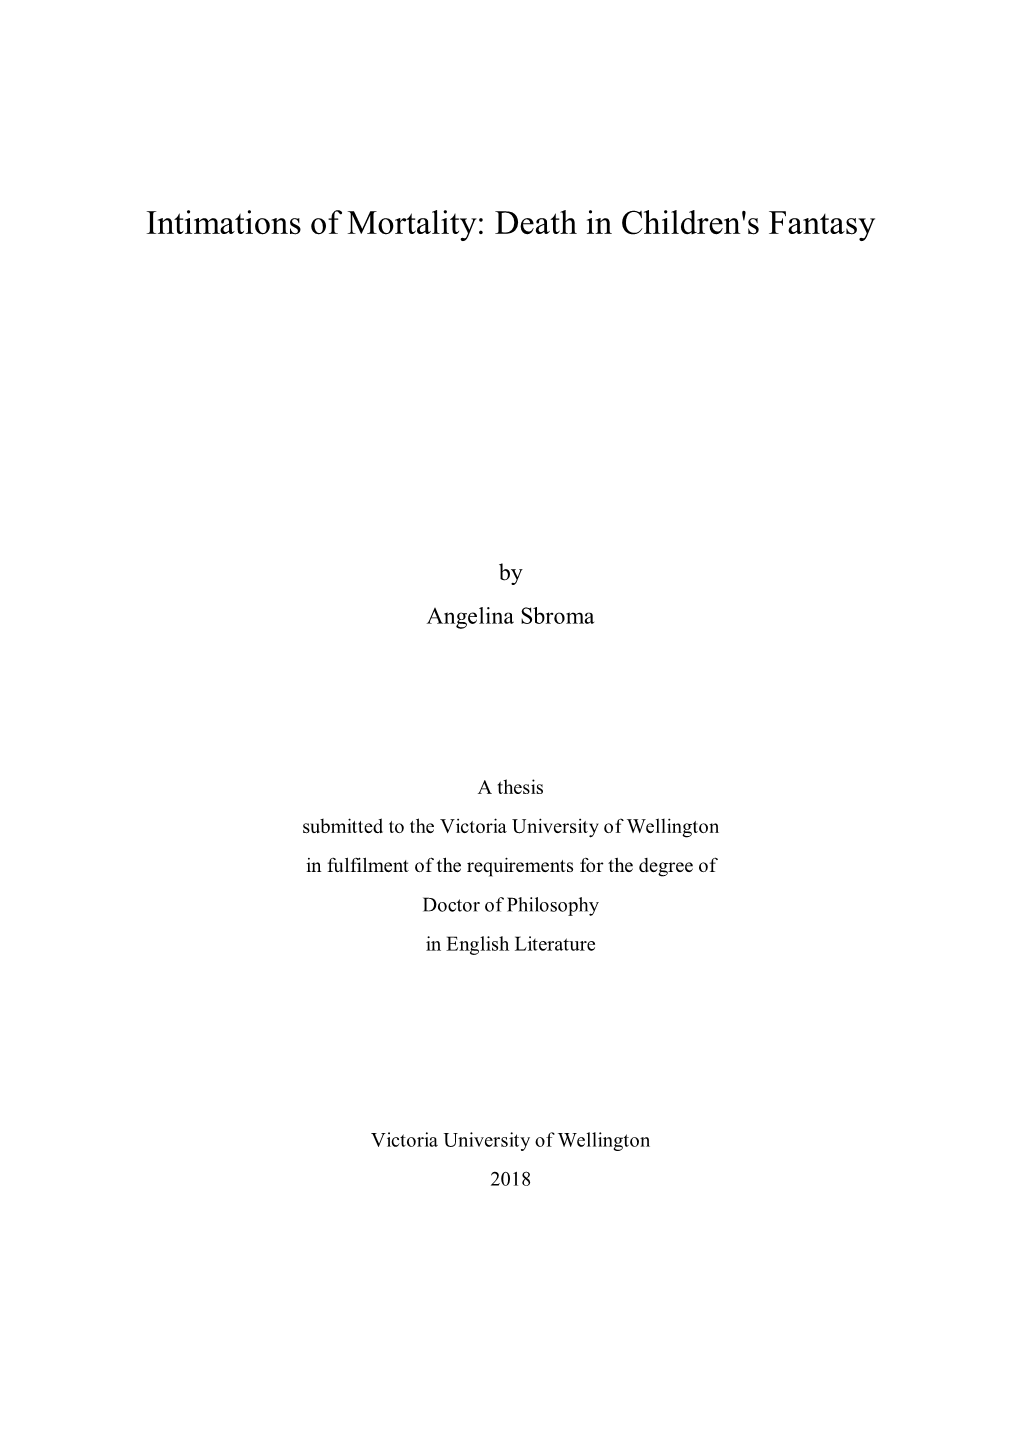 Death in Children's Fantasy